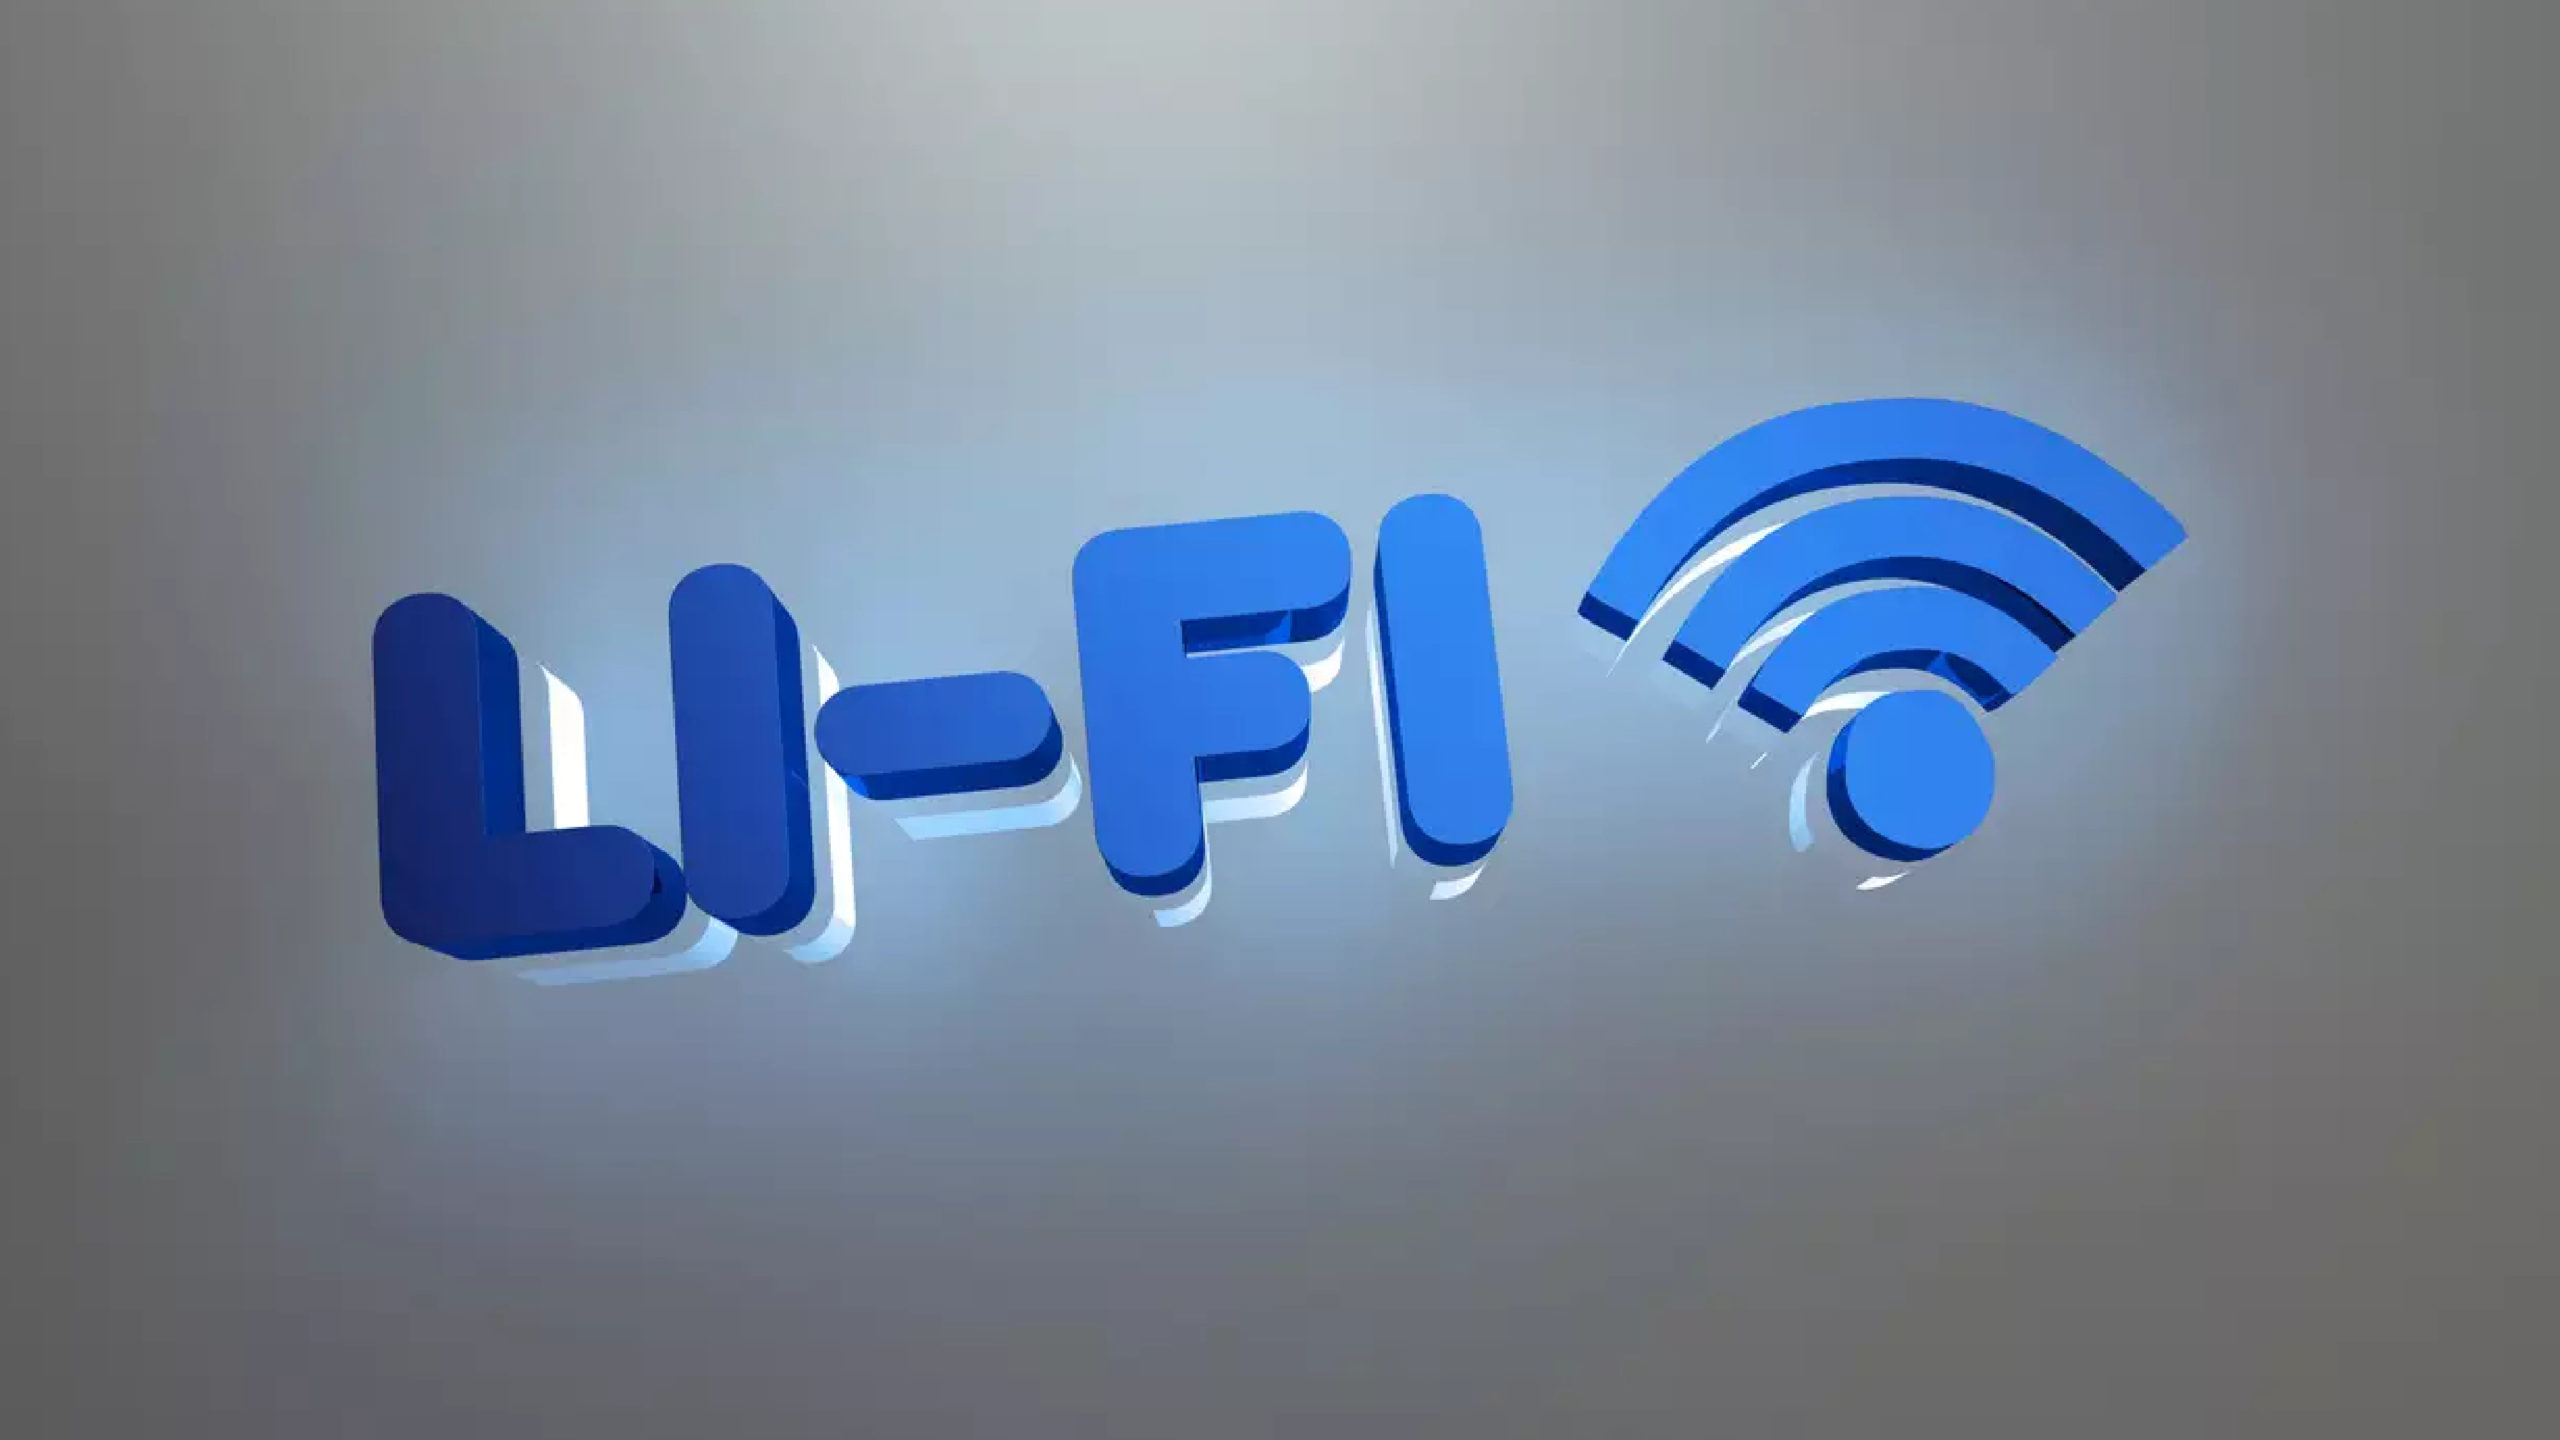 Li-fi, Li-fi technology, Light-based communication, High-speed internet